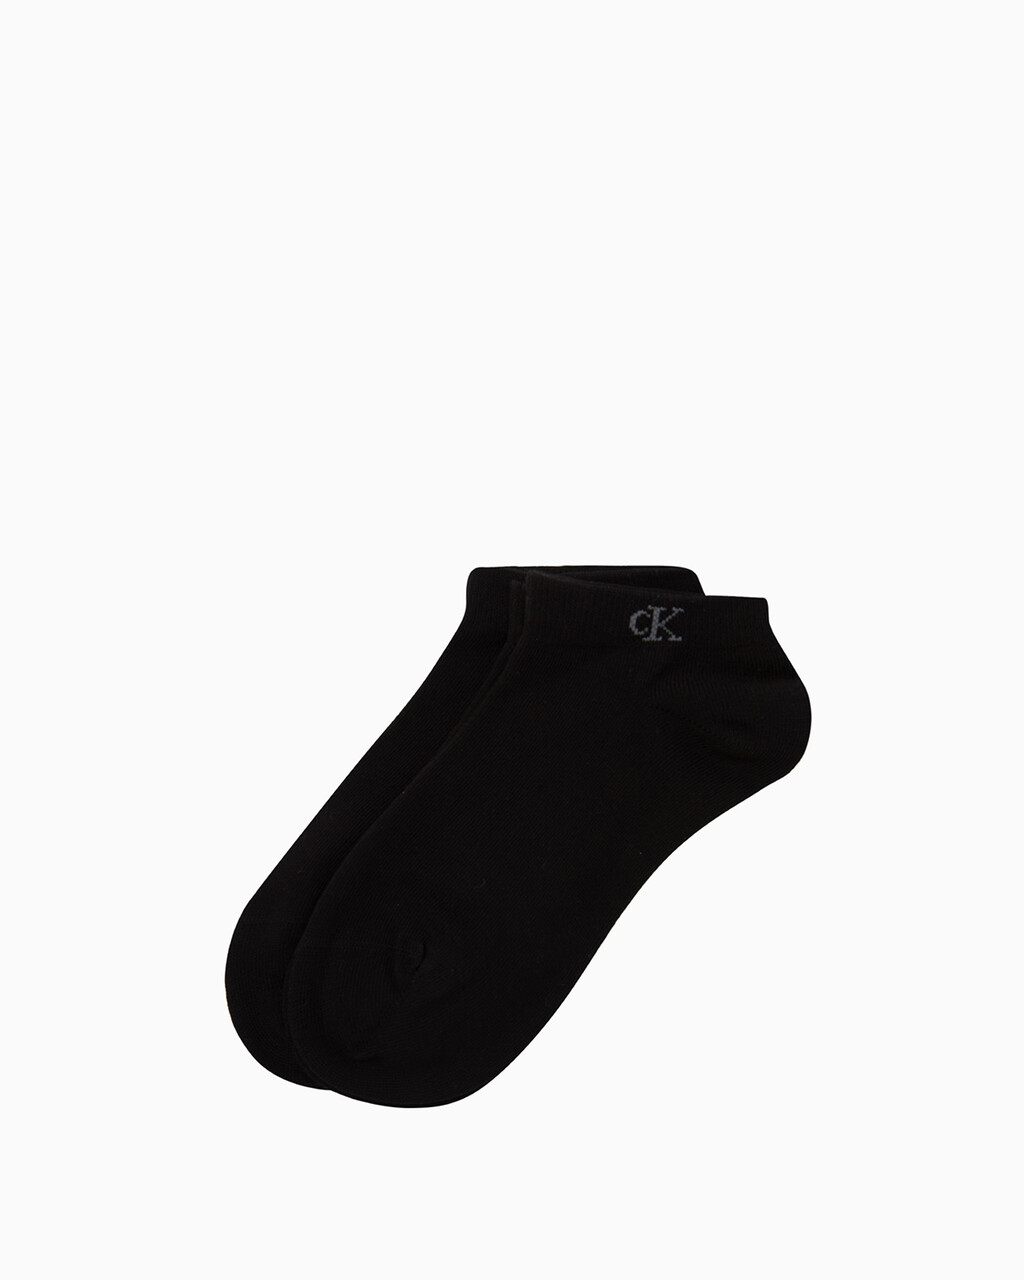 2 雙棉質低筒襪, COLOR 001, hi-res